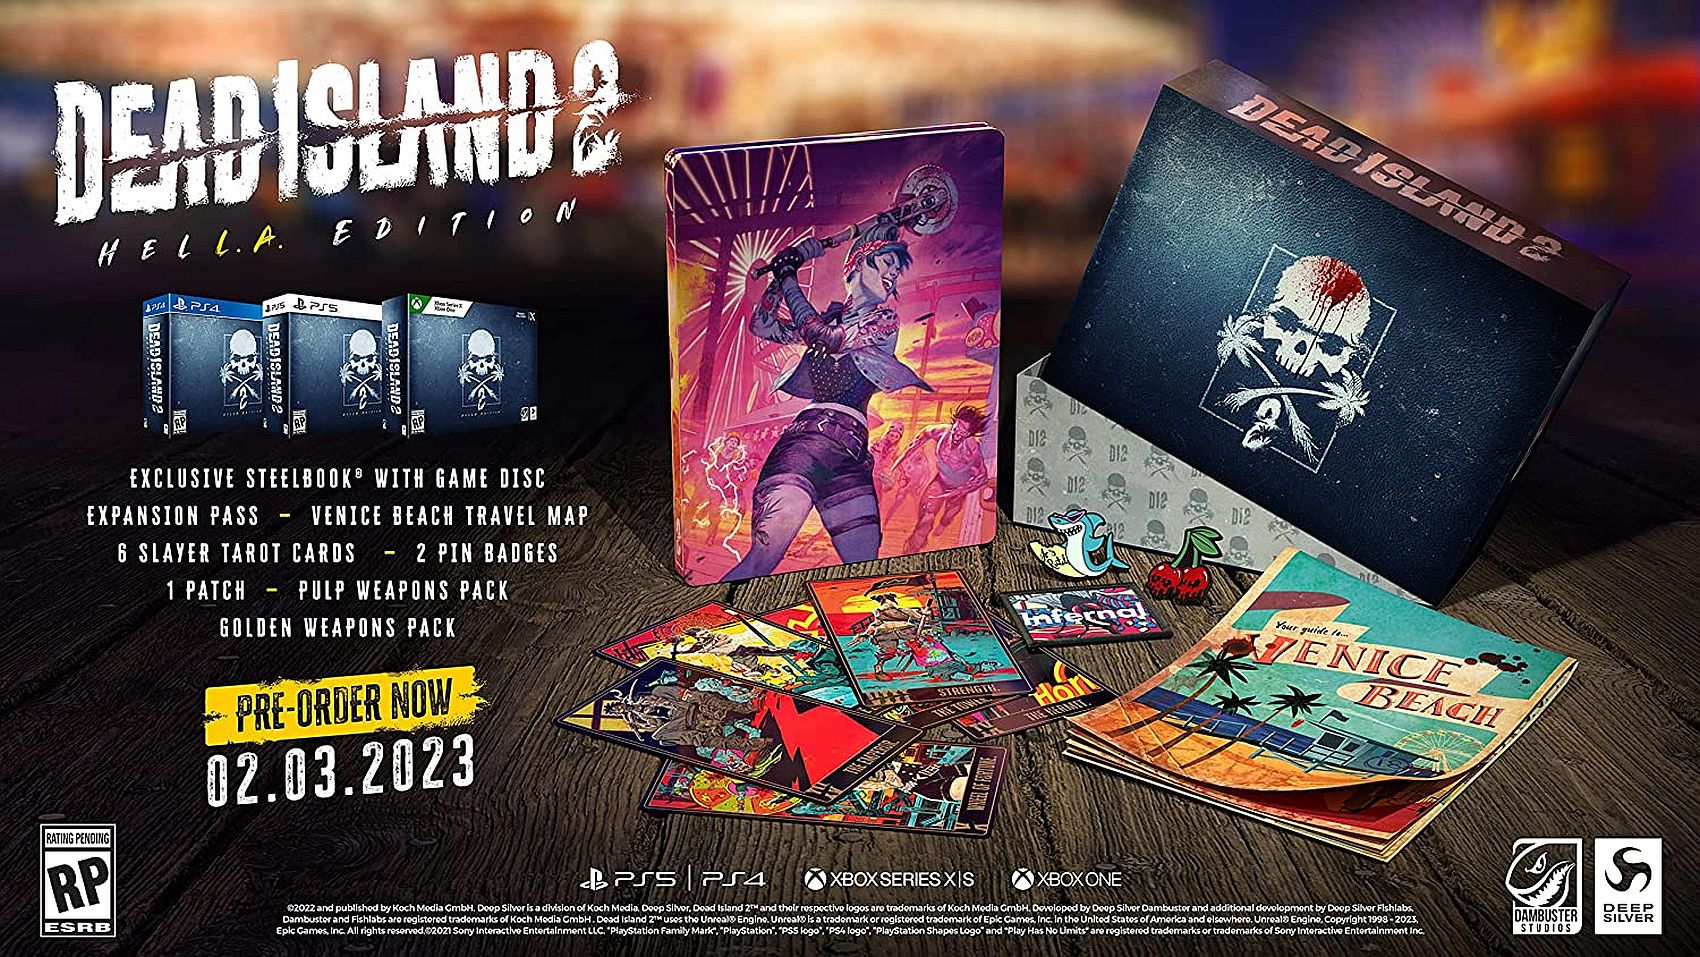 Video Dead Island 2 menawarkan tampilan gameplay yang diperpanjang